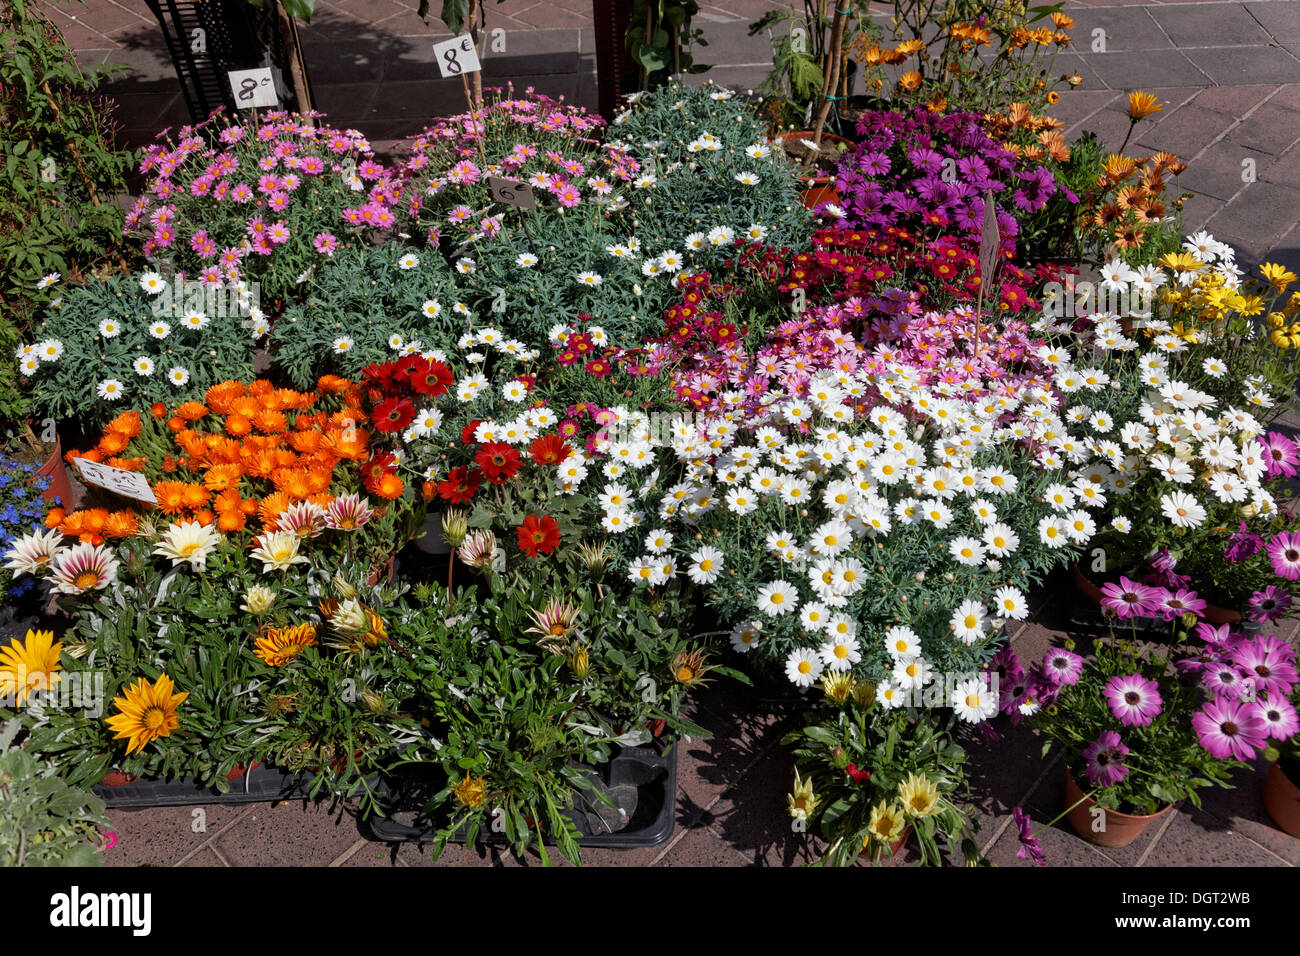 Marché aux fleurs sur le Cours Saleya, centre-ville, Nice, Département des Alpes-Maritimes, région Provence-Alpes-Côte d'Azur, France Banque D'Images